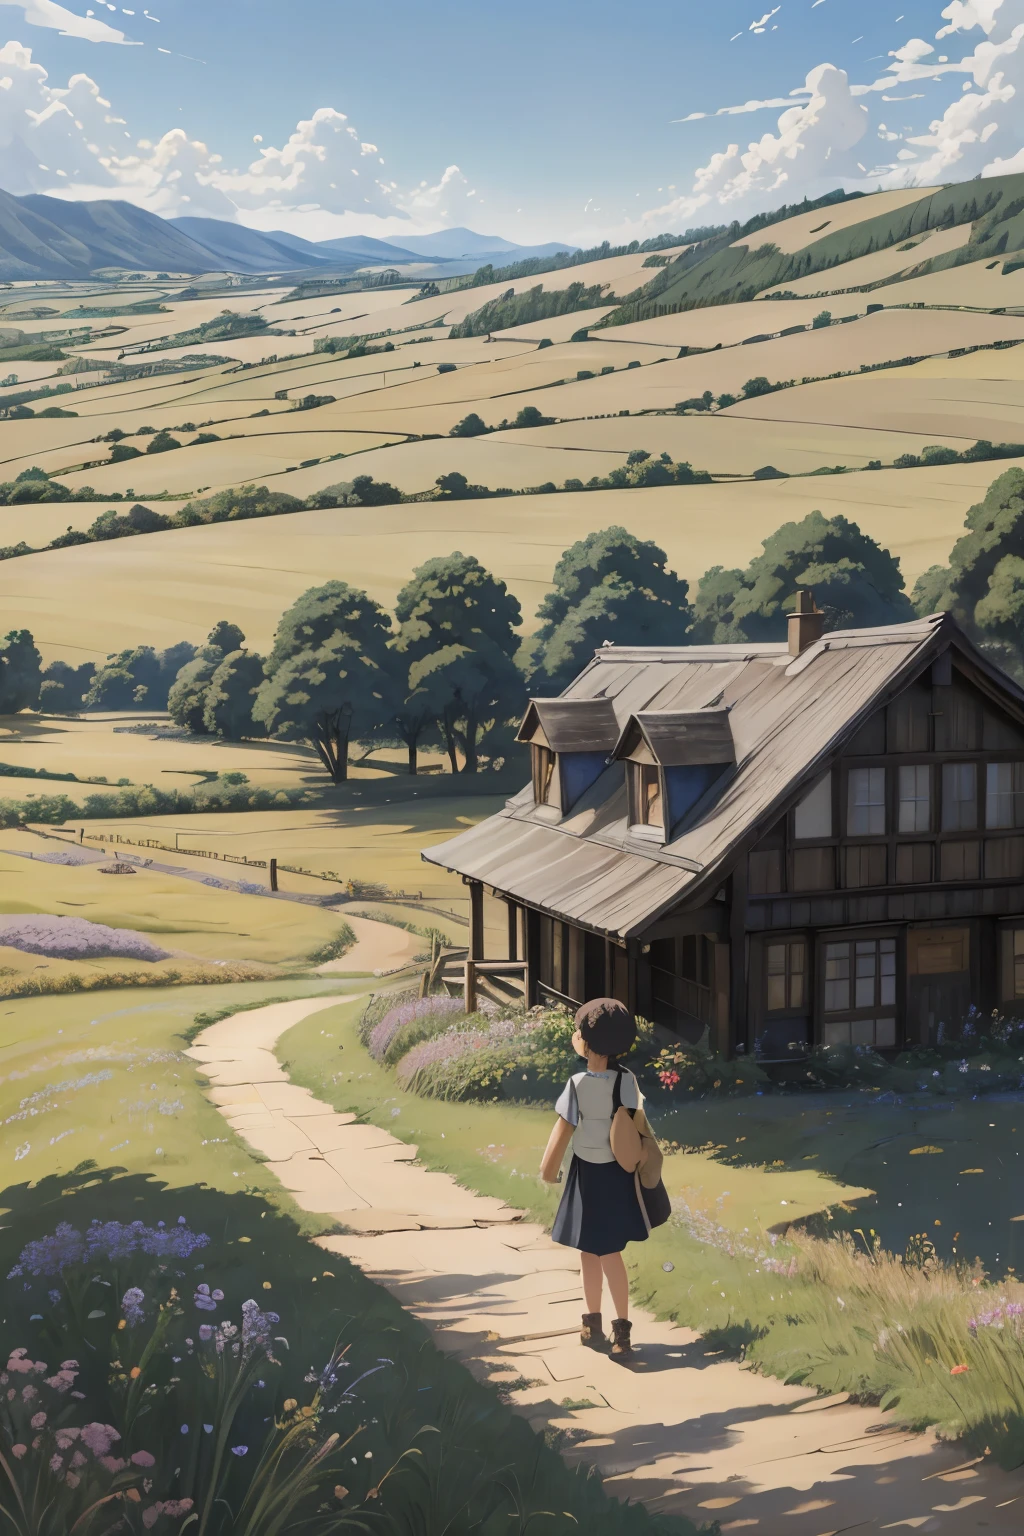 réaliste, Réel, belle et superbe peinture à l&#39;huile de paysage Studio Ghibli Hayao Miyazaki Pétales Prairie Ciel Bleu Prairie Route de campagne,bâtiment, belle fille